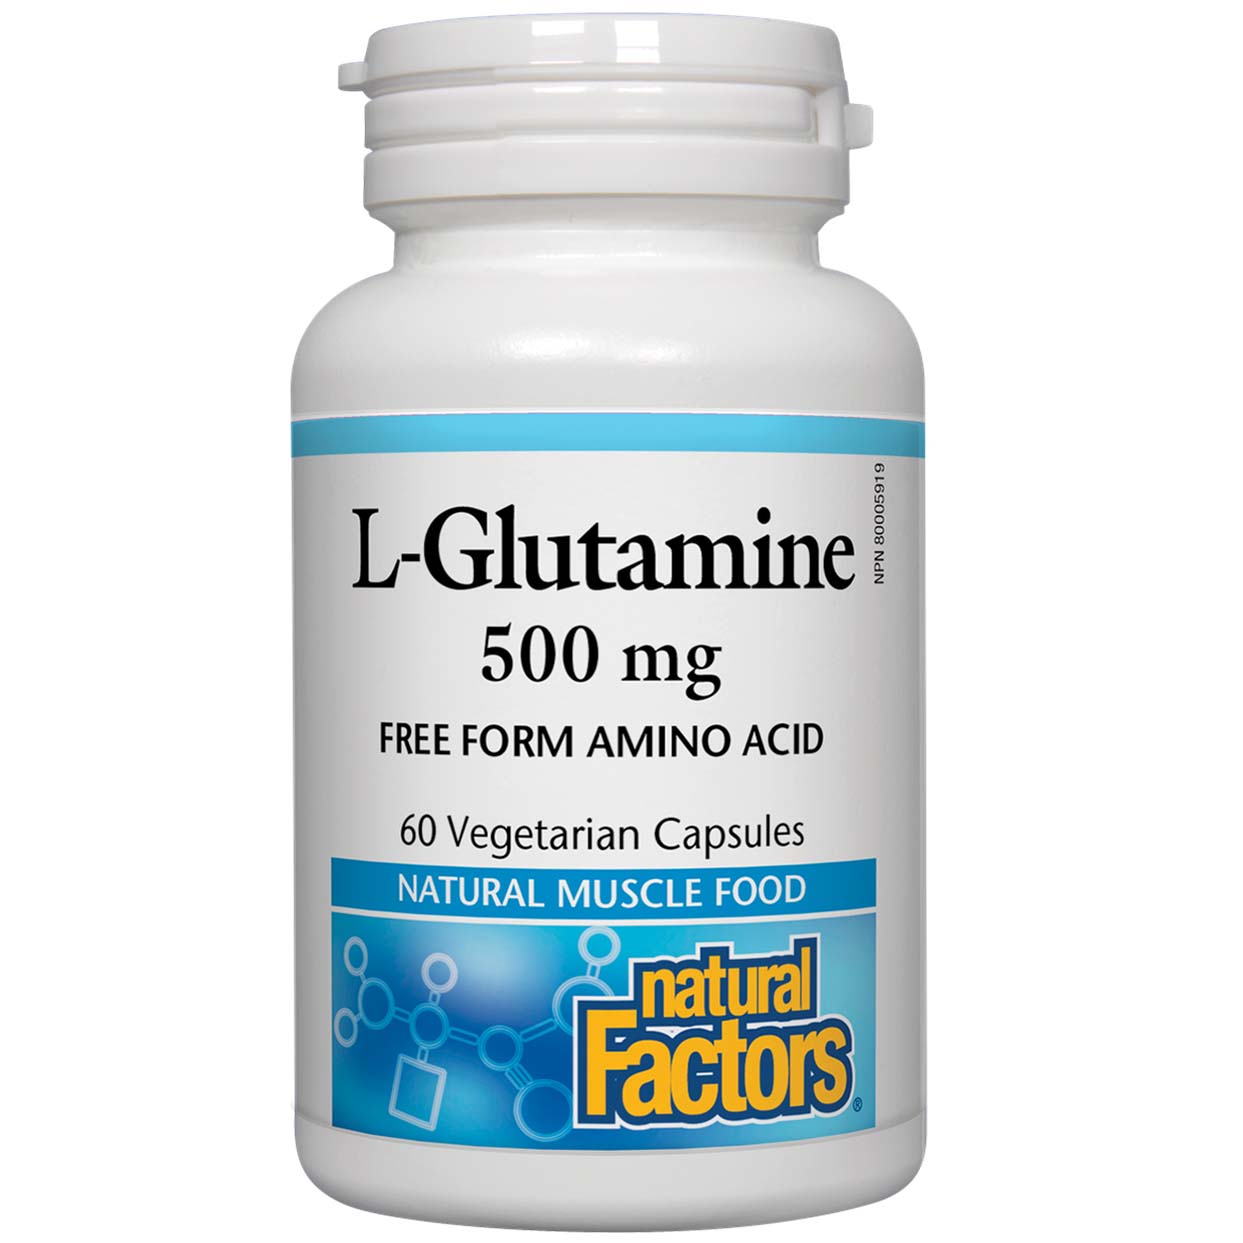 Natural Factors L-Glutamine 60 Veggie Capsules 500 mg